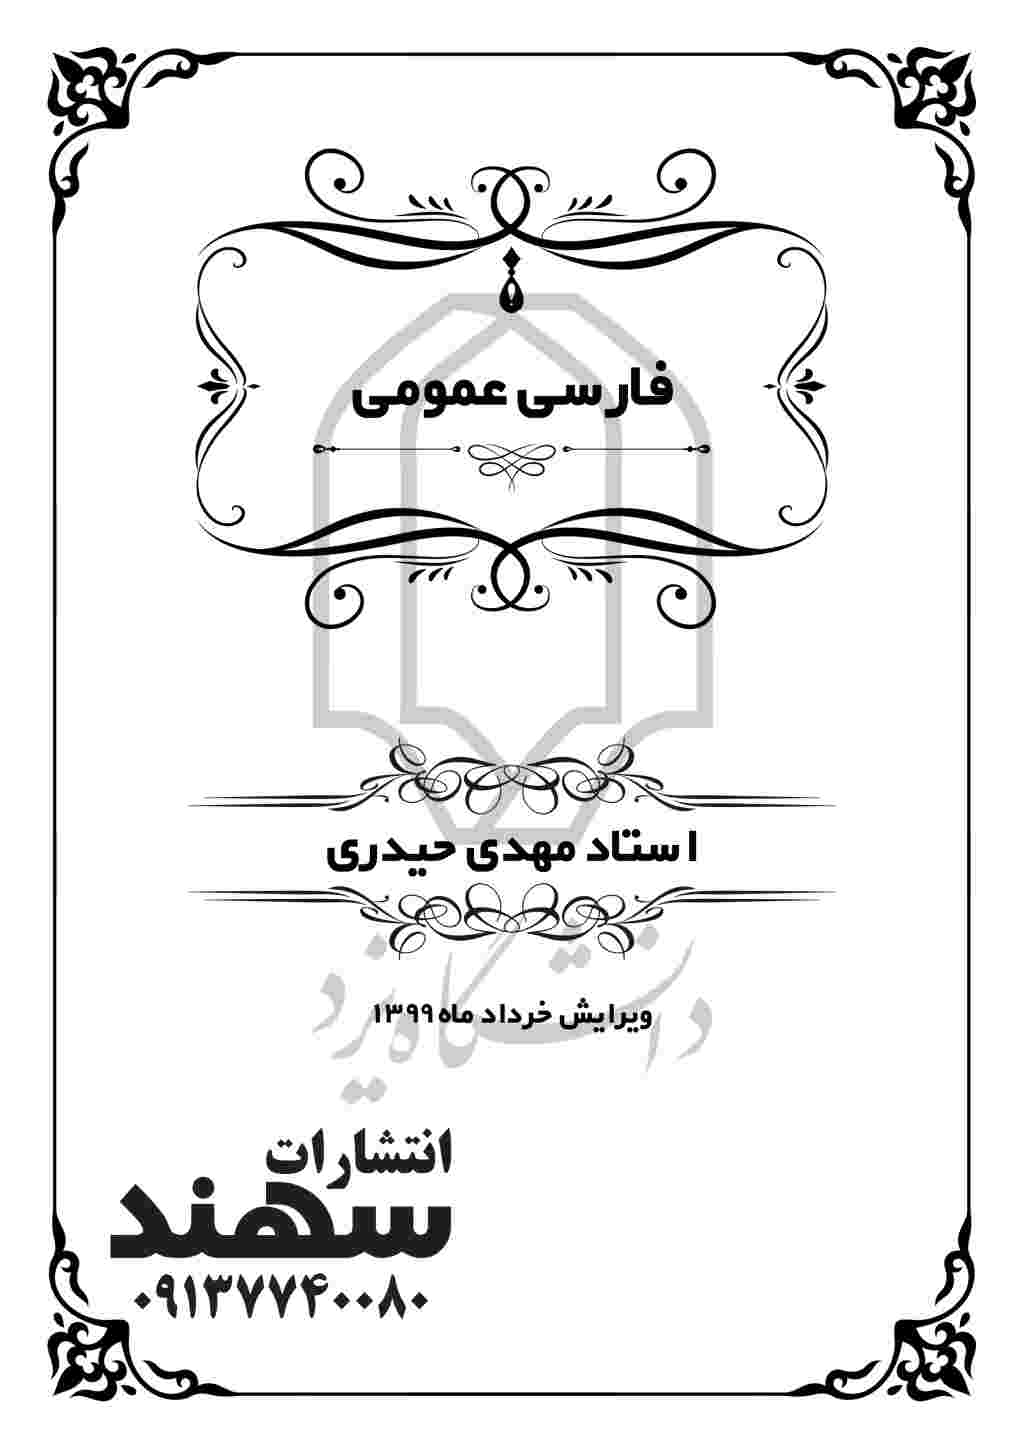 فارسی عمومی  ویرایش شده